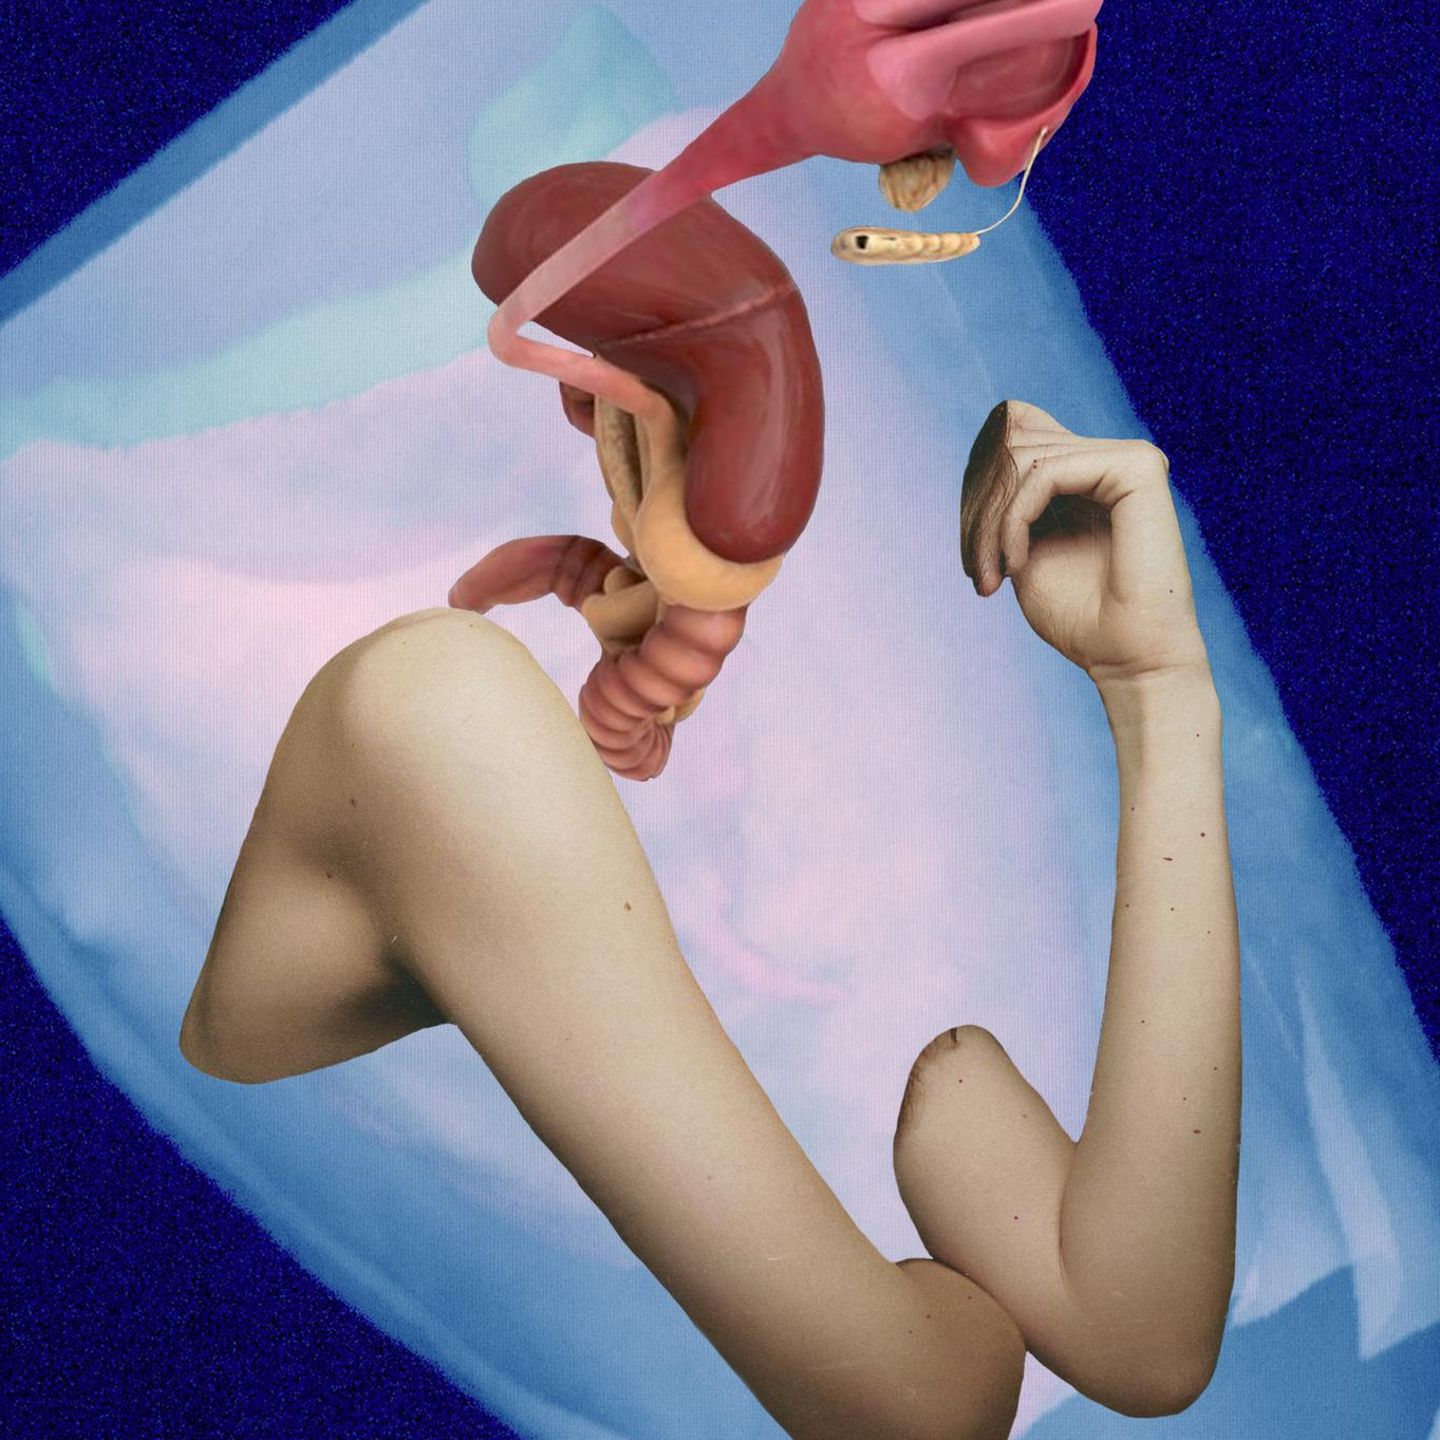 Die Künstlerin Florence Iff kombiniert eigene CT-Scans mit Bildern von Organen und Gliedmaßen, um die Zerbrechlichkeit des weiblichen Körpers zu veranschaulichen. Frauen sind noch in der medizinischen Versorgung benachteiligt, da Männer weiterhin als Standard der Medizin gelten  